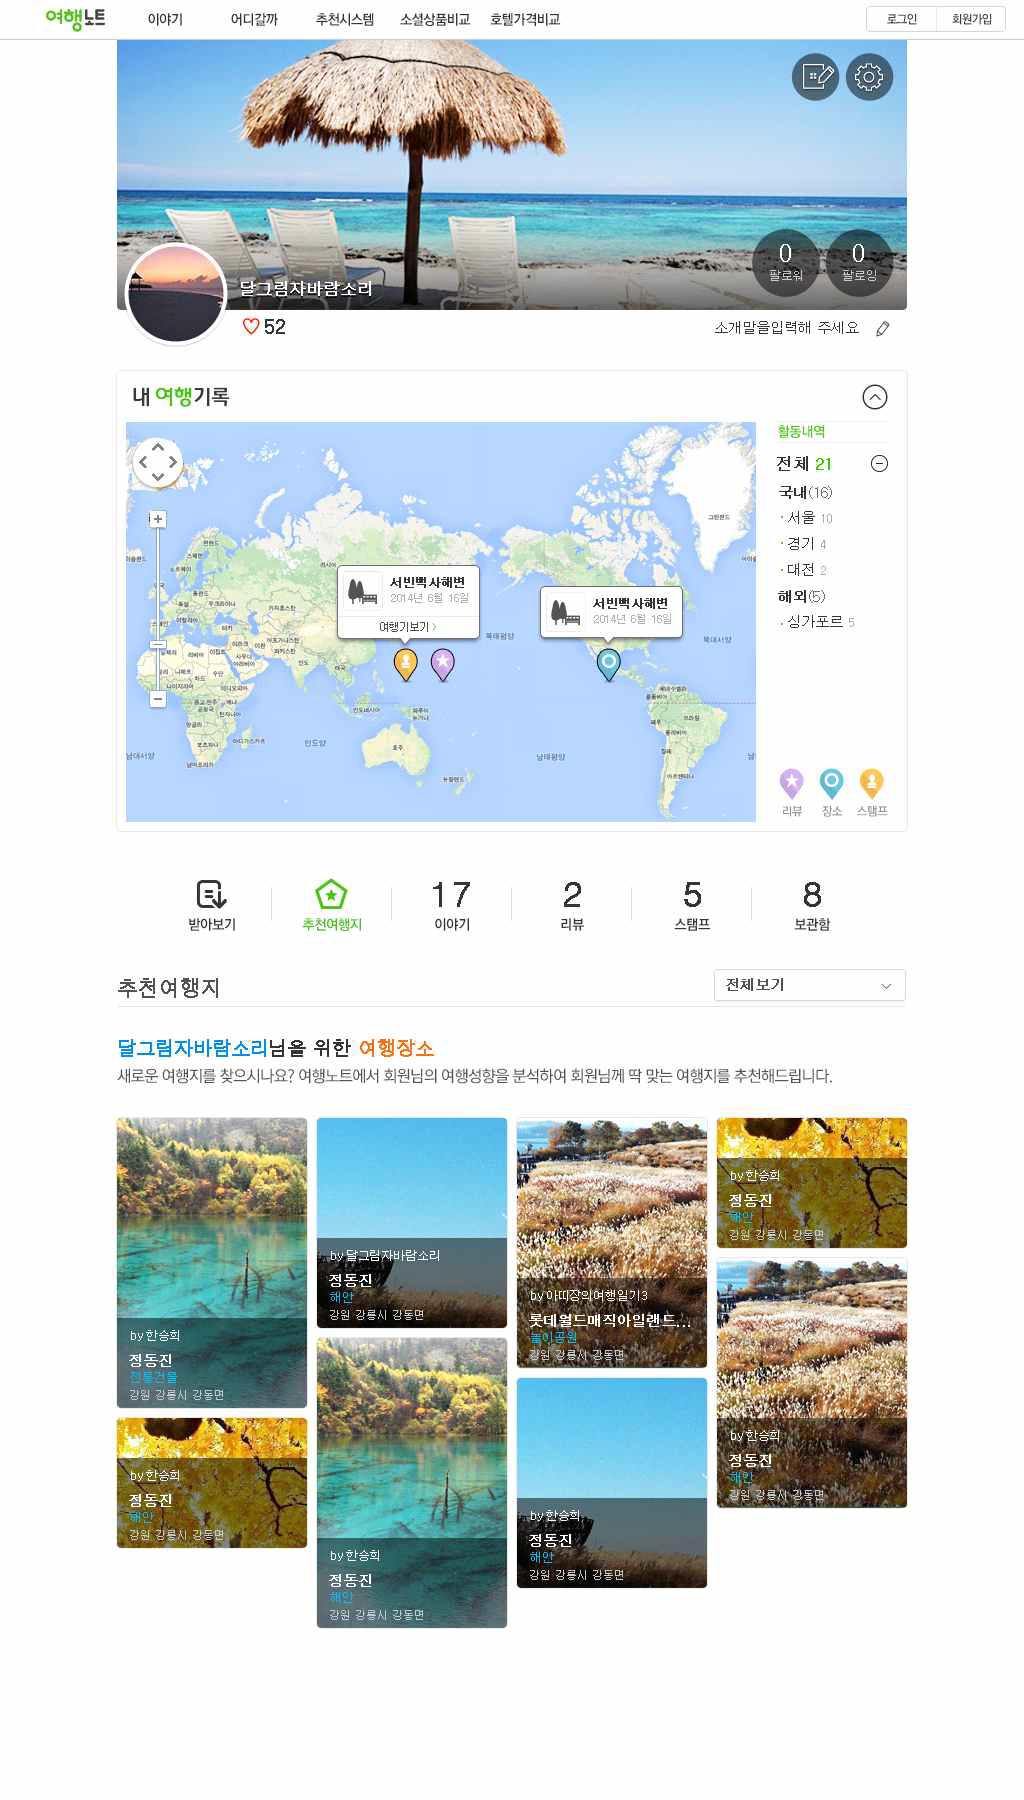 여행노트 웹 서비스 내 추천표시-프로필 페이지